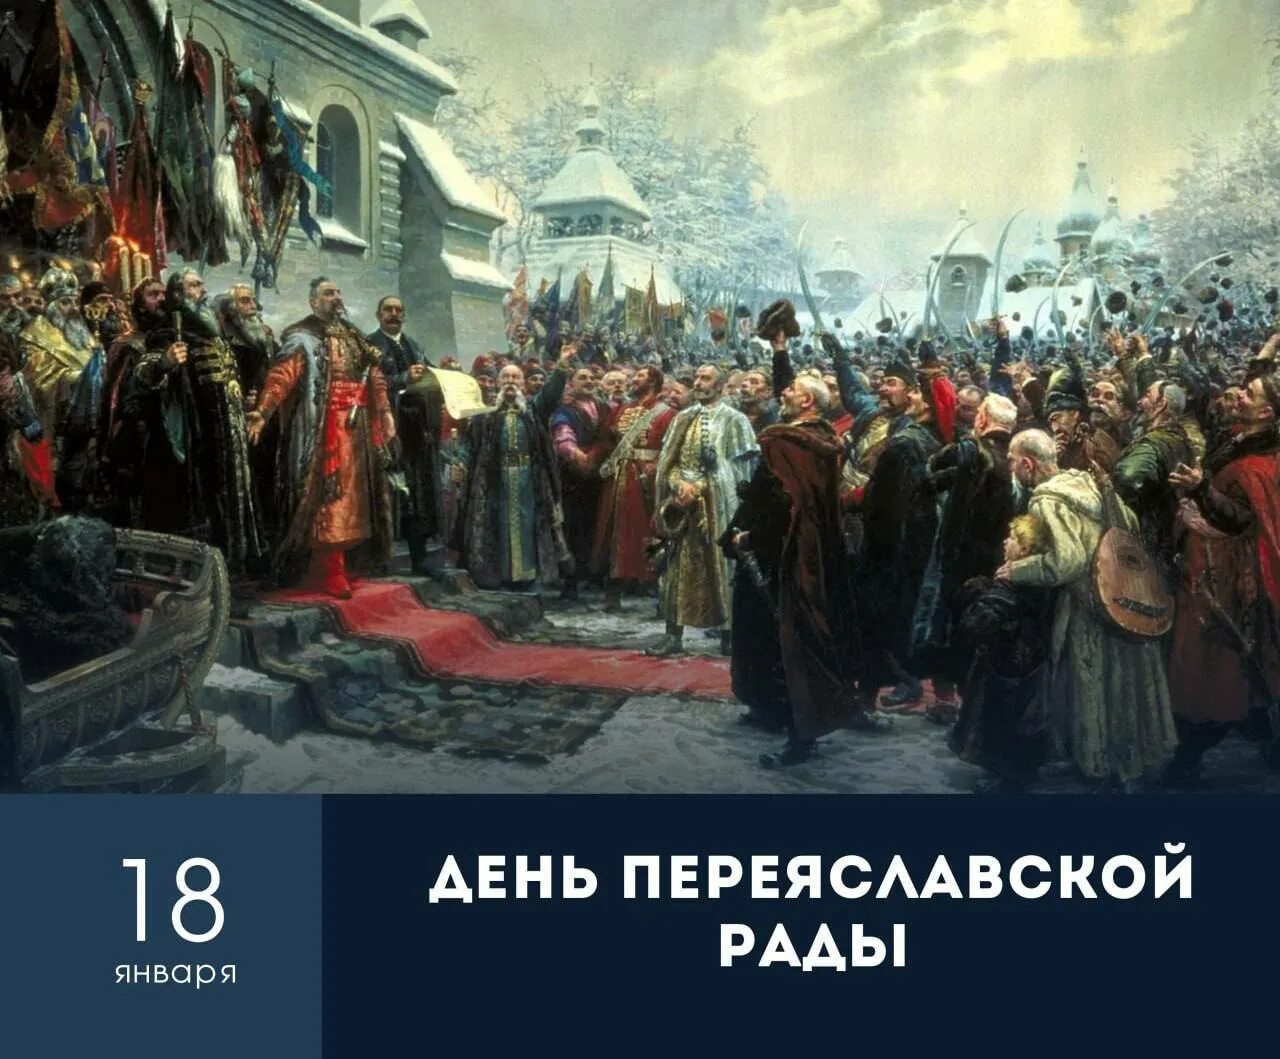 Переяславская рада 1654 решения. Переяславская рада 1654 картина. 18 Января 1654 — состоялась Переяславская рада.